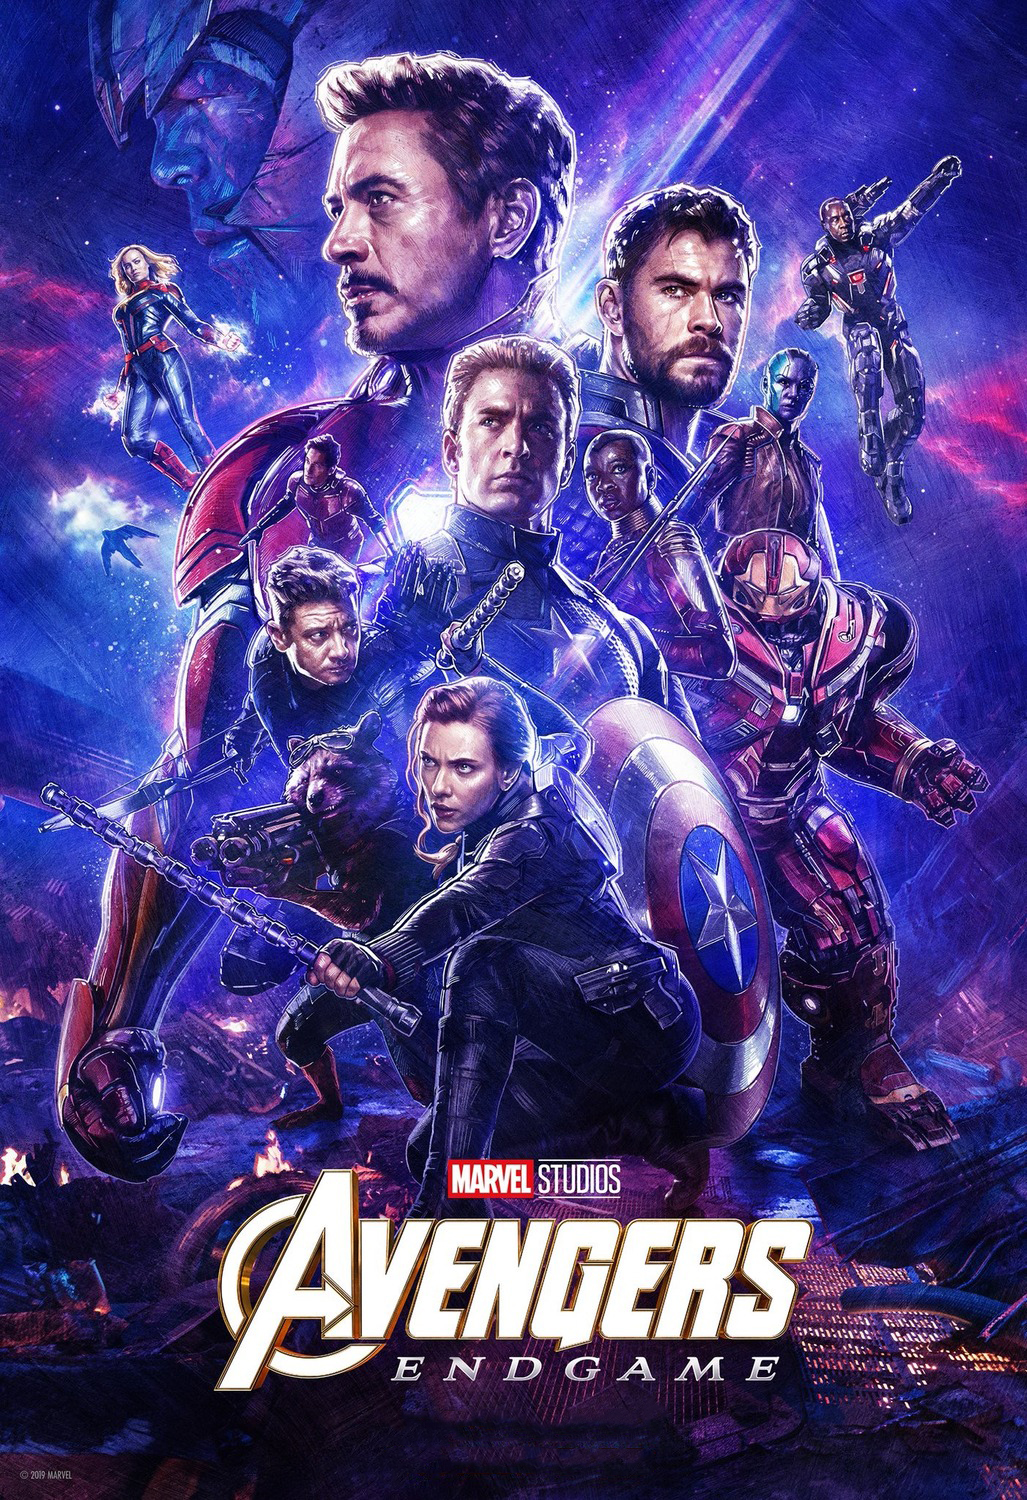 Avengers: Endgame Film Review